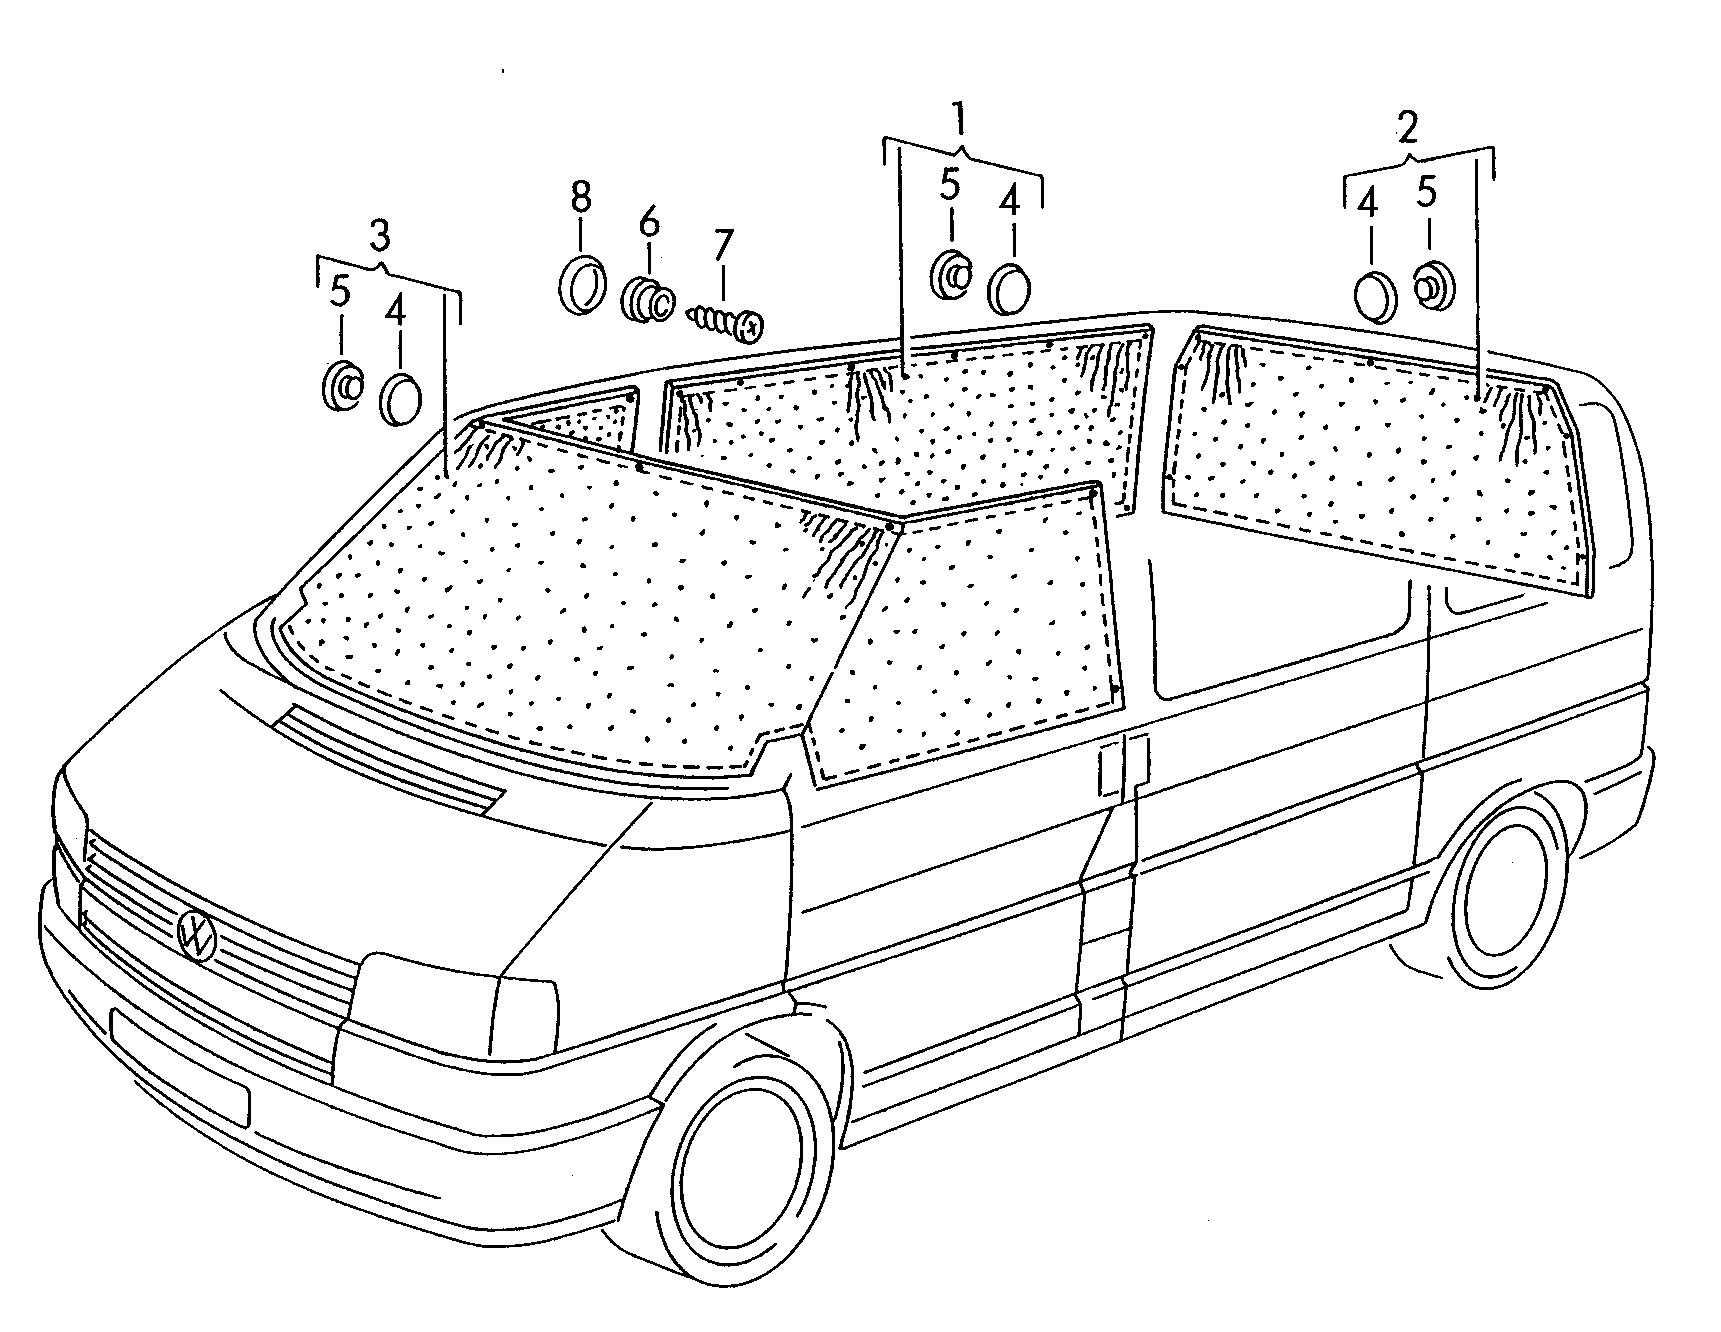 tendine - Transporter(TR)  